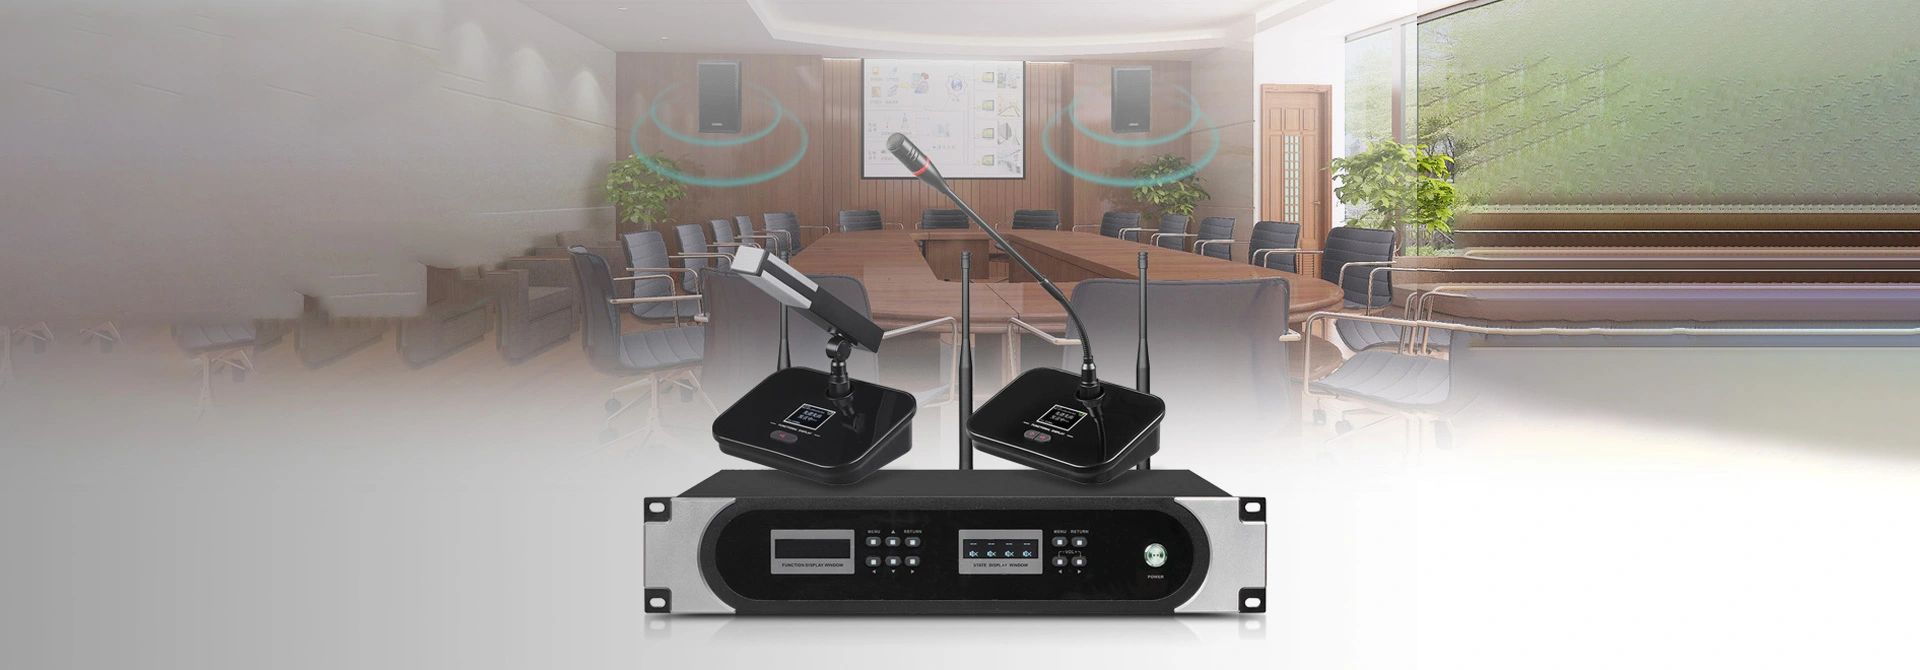 Giải pháp hệ thống hội nghị không dây UHF cho phòng hội nghị dw9866